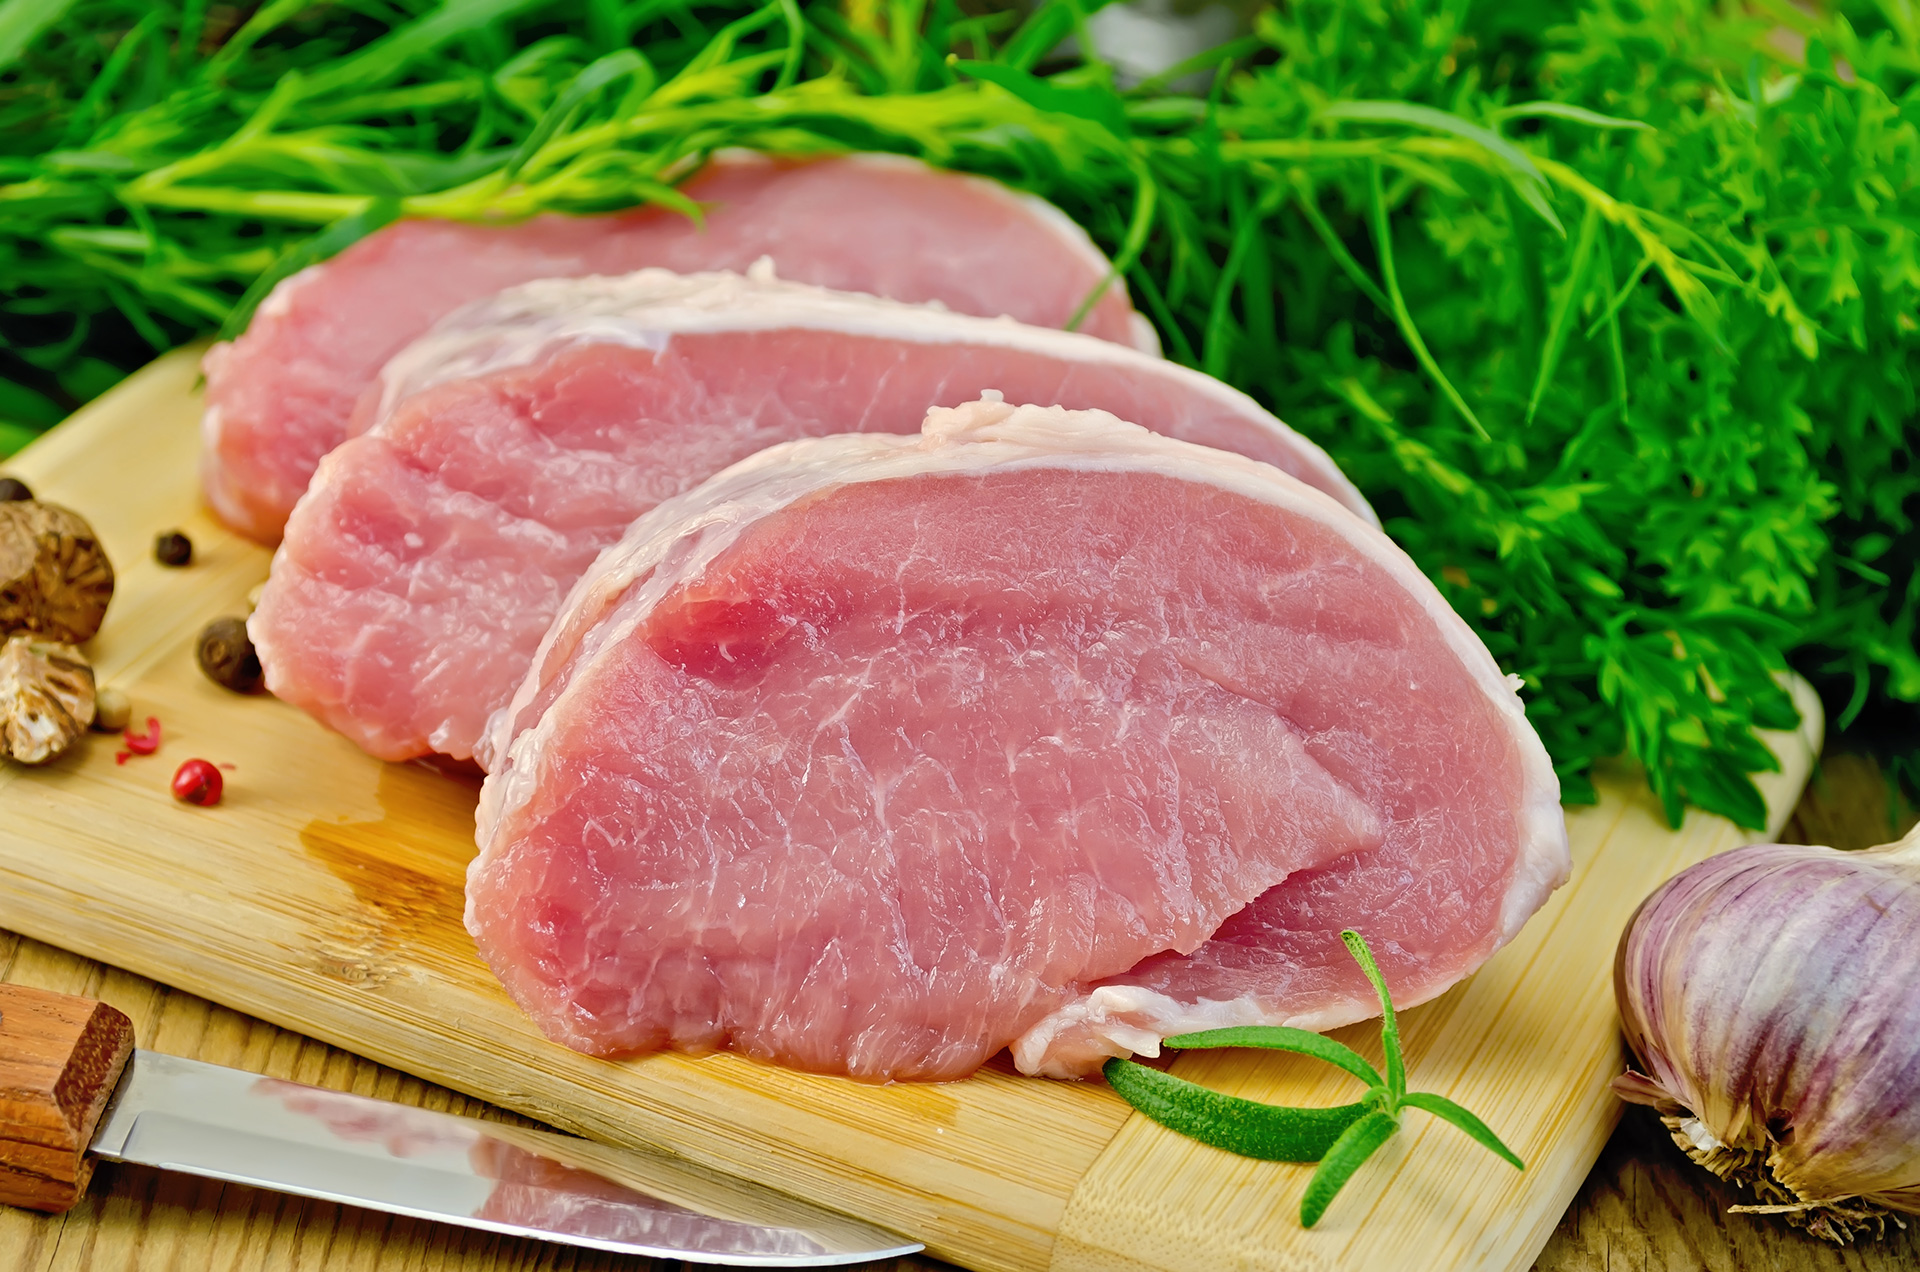 Mitos de comer carne de cerdo